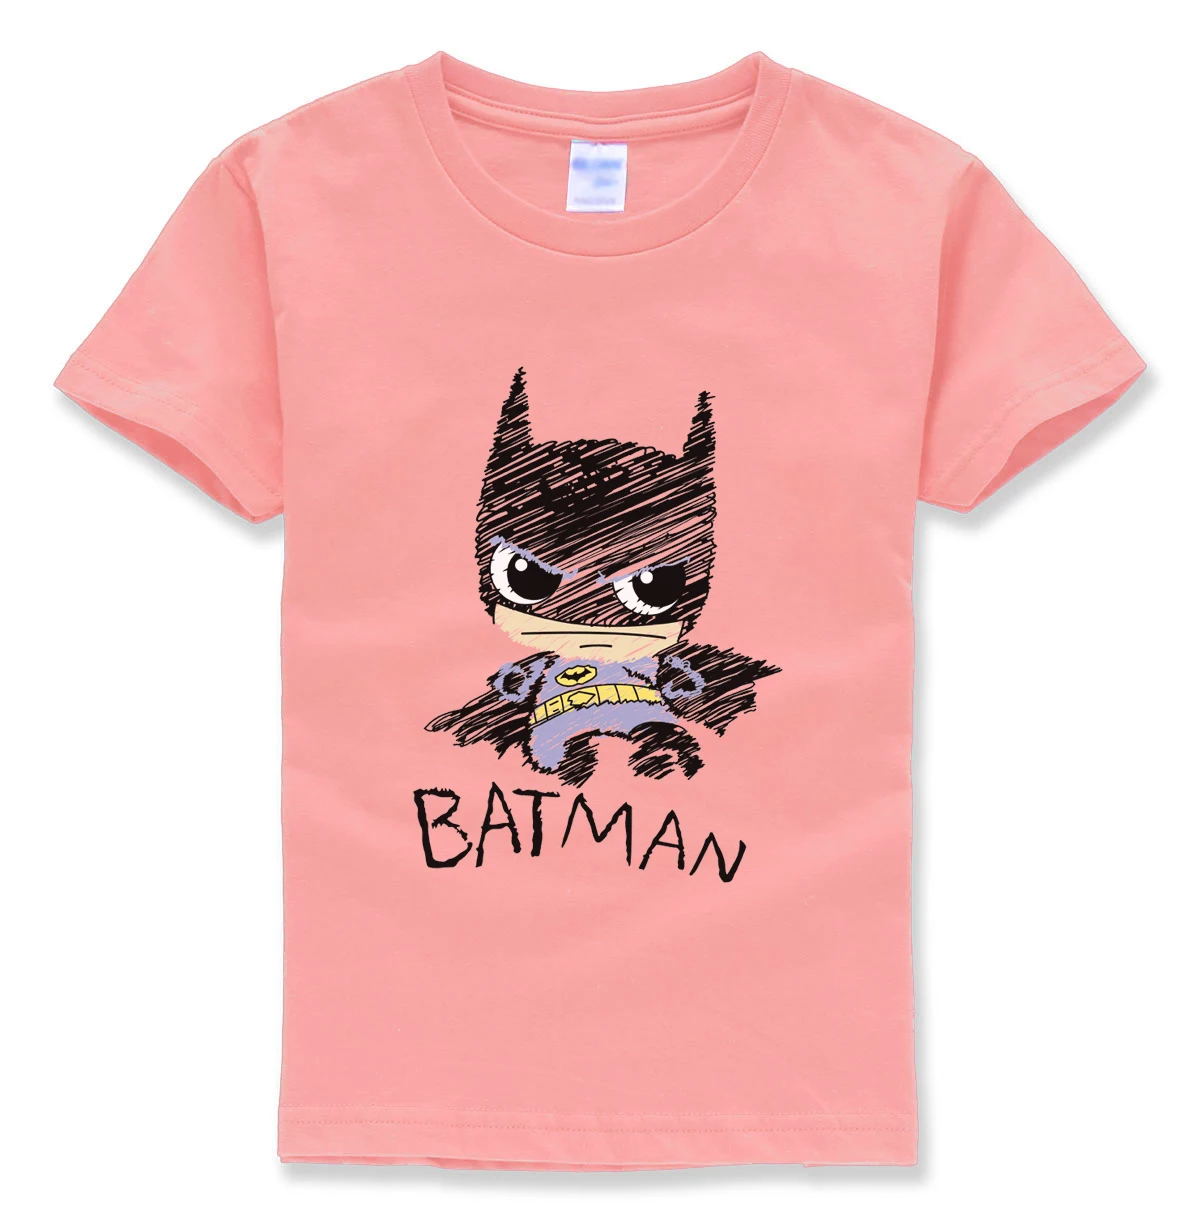 Бэтмен футболки с коротким рукавом HOMME Футболки Уличная Hipster Лето 2018 хлопок в стиле хип-хоп футболка детские одежда для девочек футболки